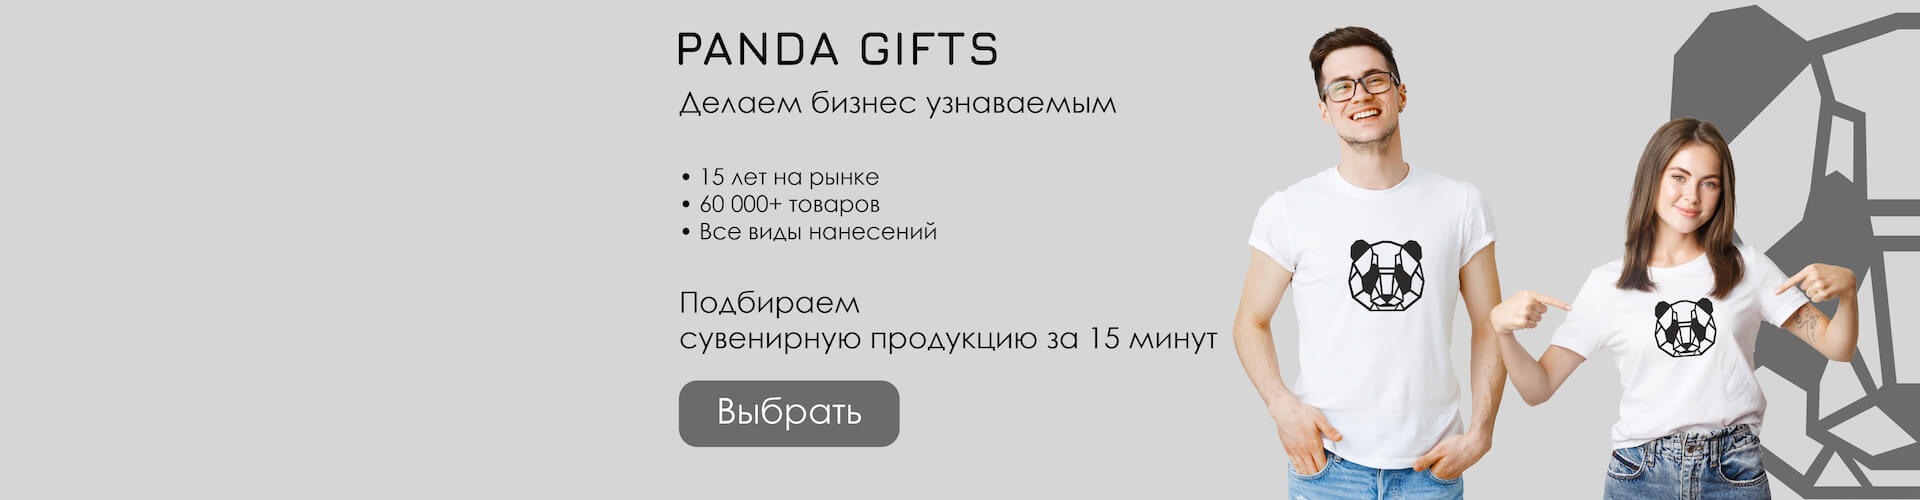 Panda Gifts - делаем бизнес узнаваемым